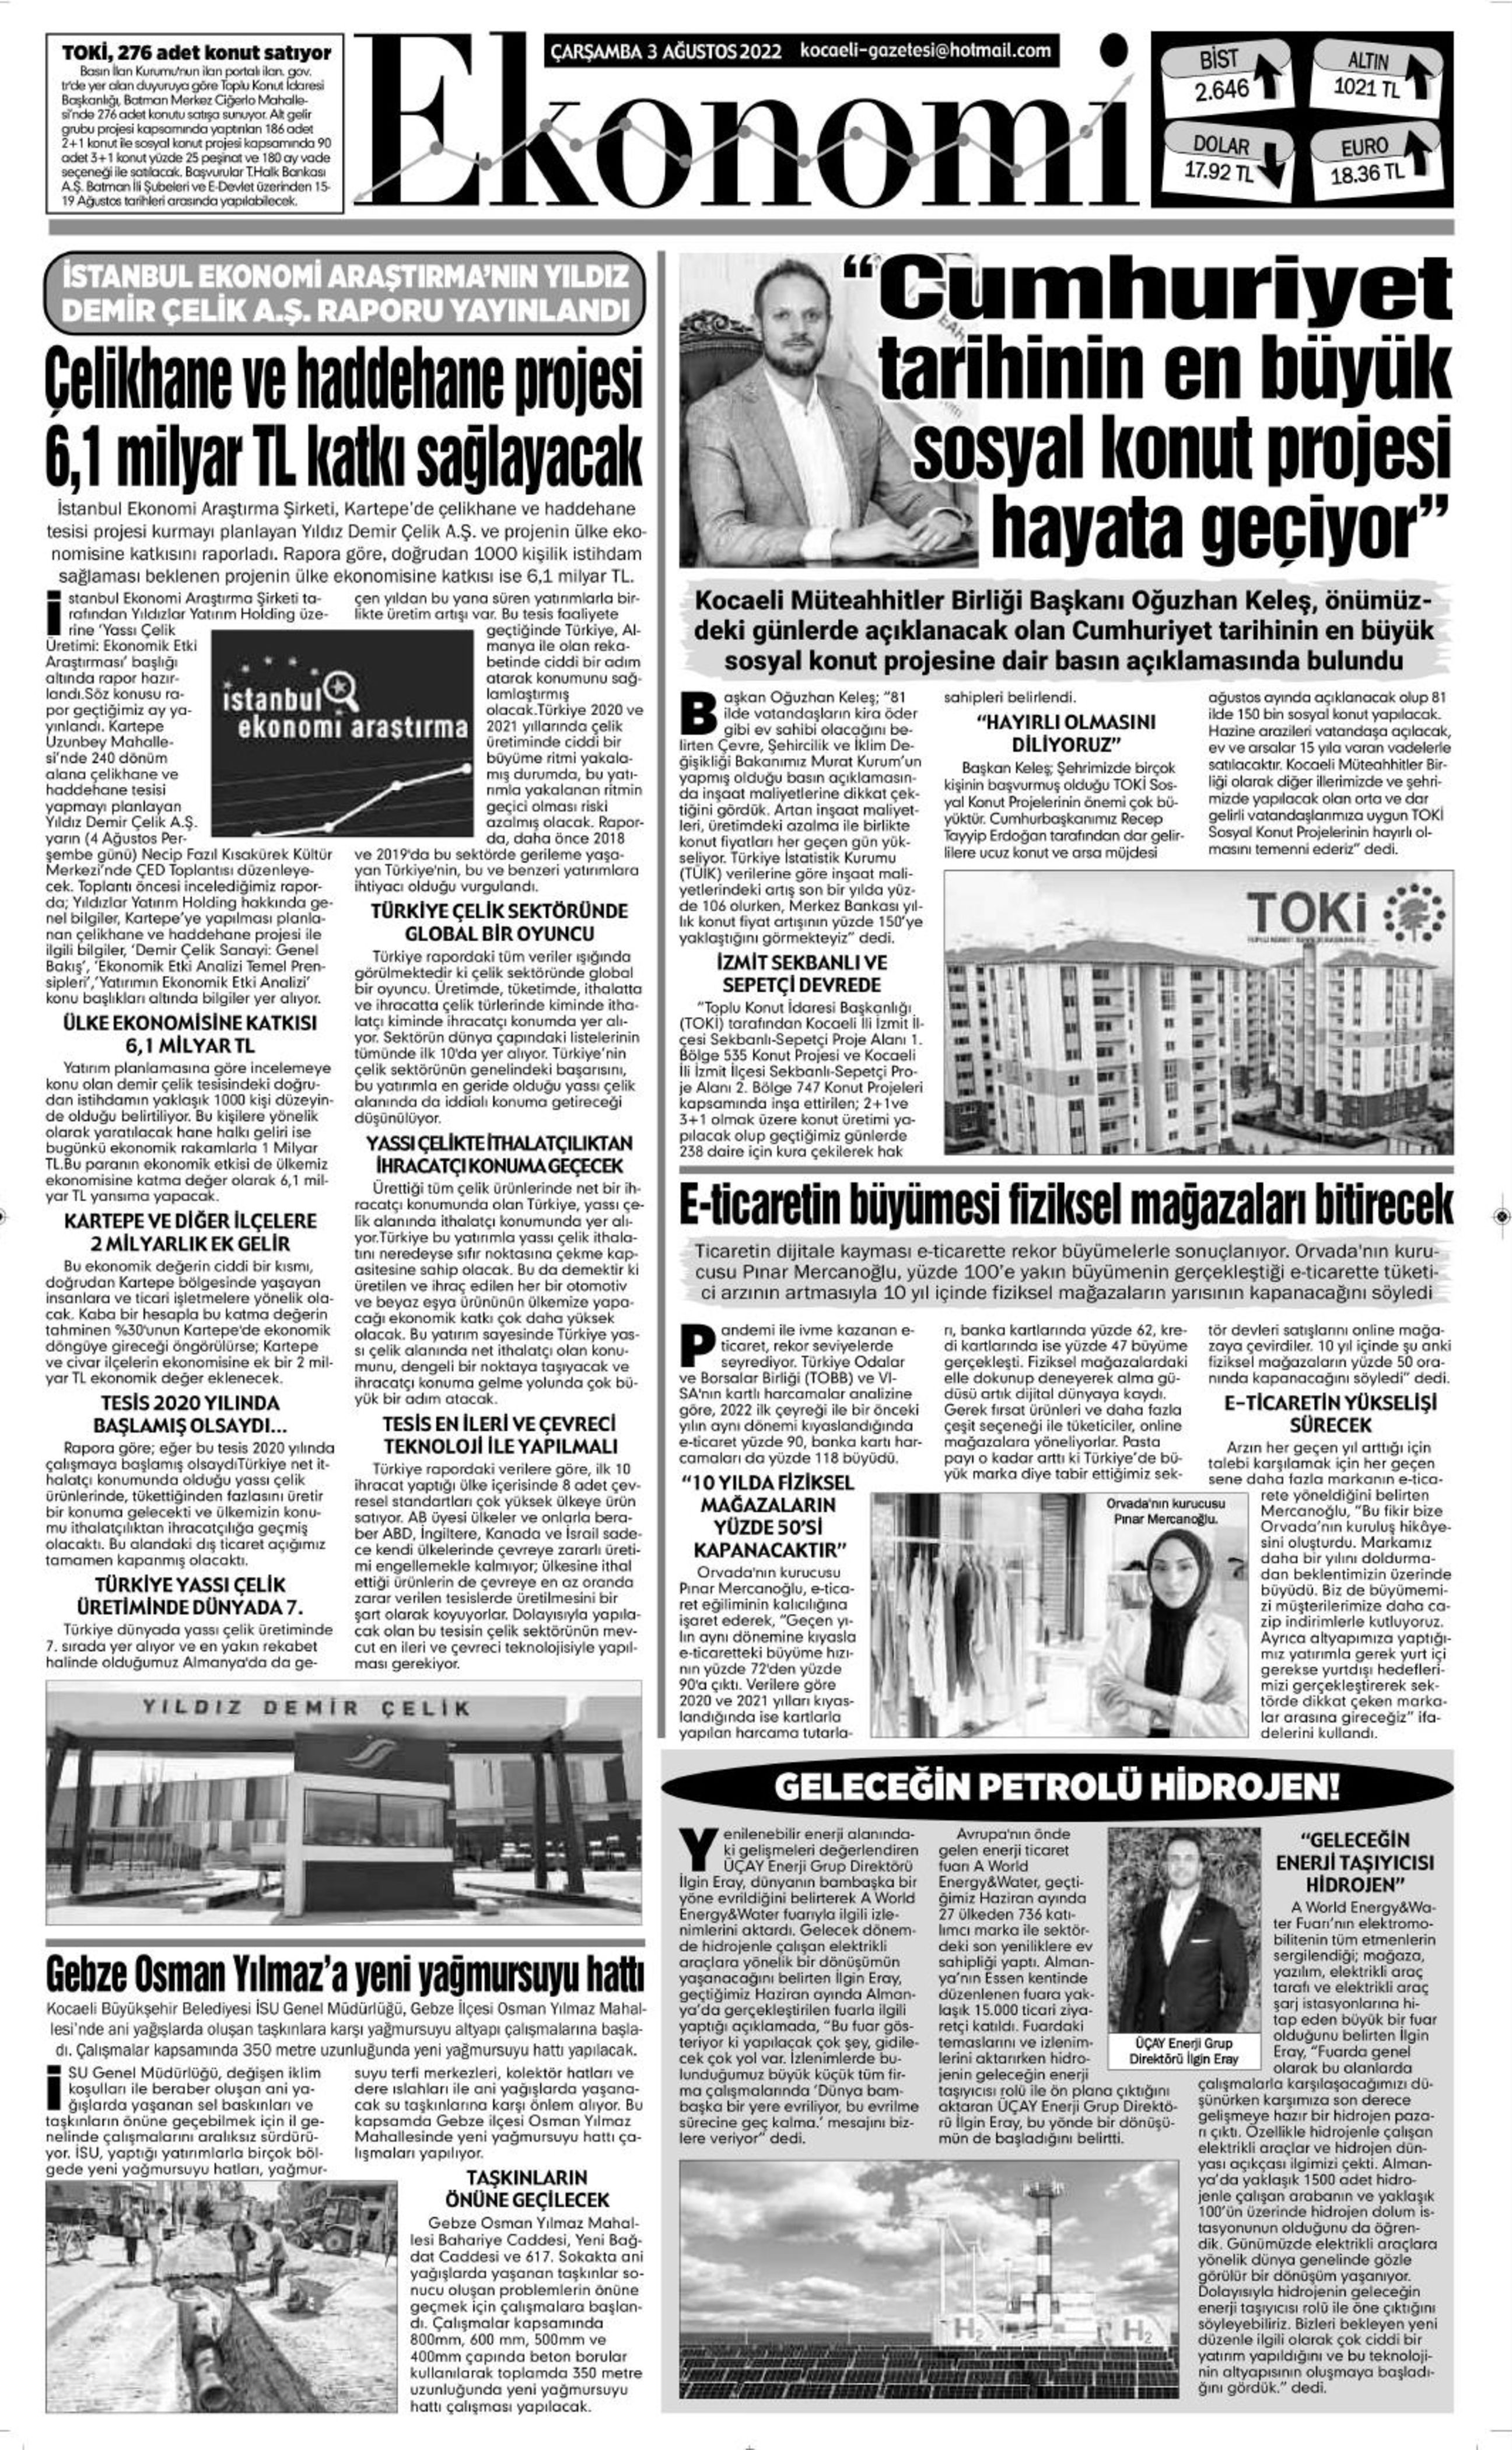 kocaeli-gazetesi-2.jpeg